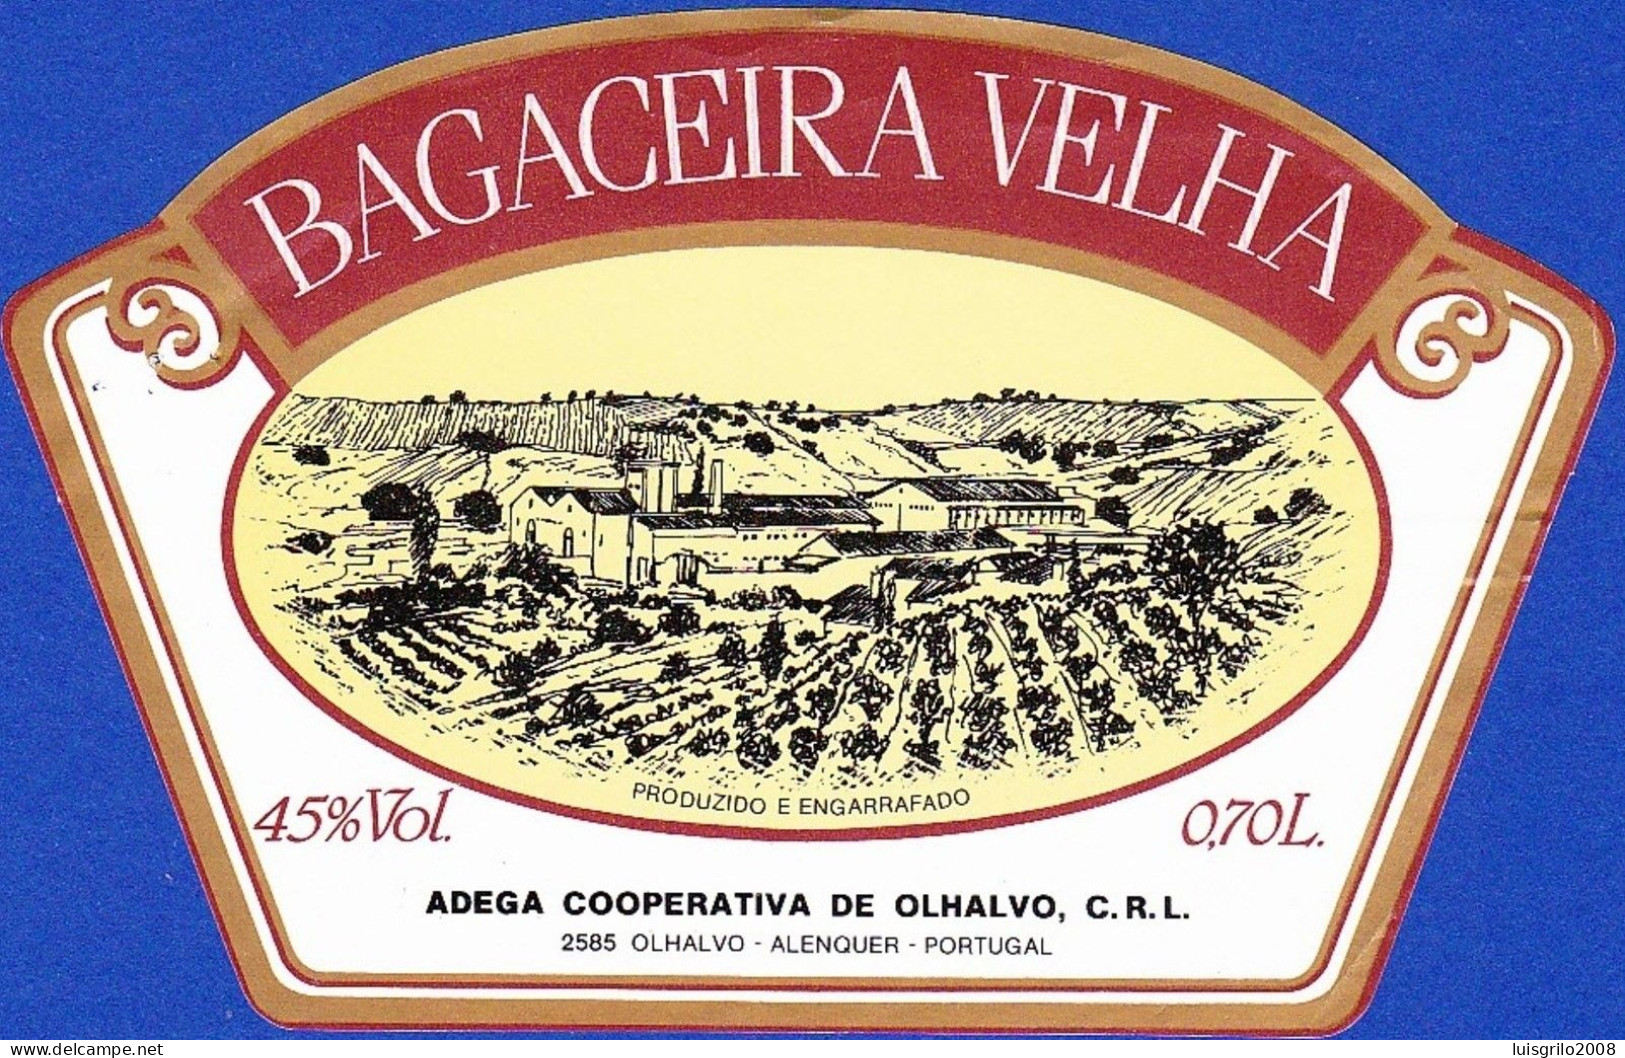 Brandy Label, Portugal - BAGACEIRA VELHA. Adega Cooperativa De Olhalvo.  Alenquer - Alcohols & Spirits